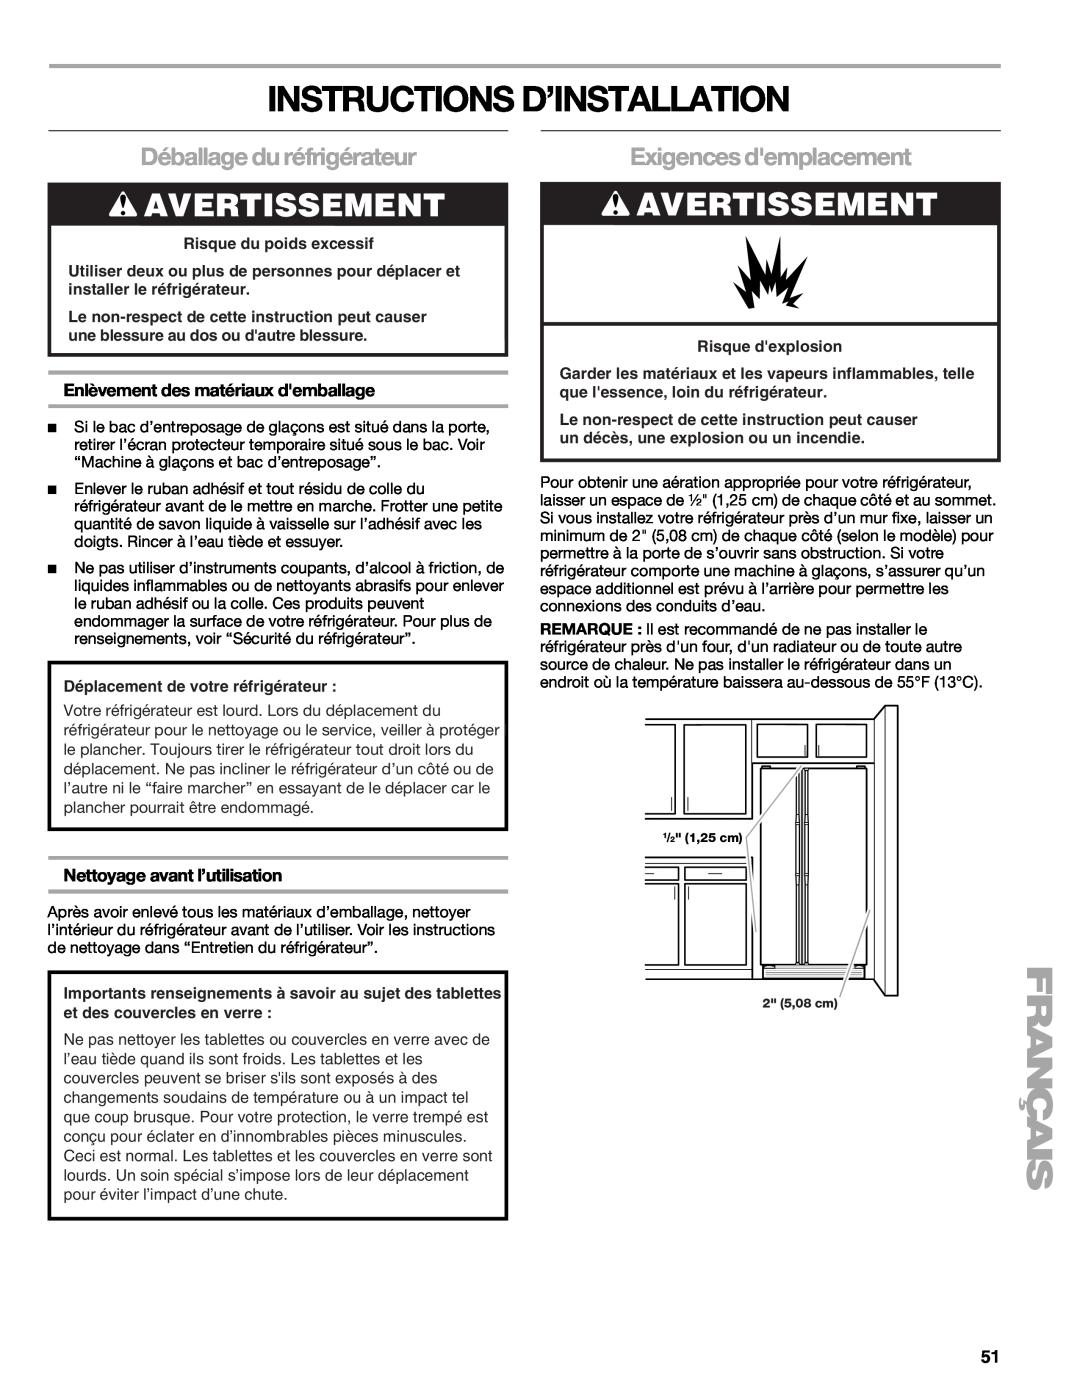 Sears T1KB2/T1RFKB2 manual Instructions D’Installation, Déballage du réfrigérateur, Exigences demplacement, Avertissement 